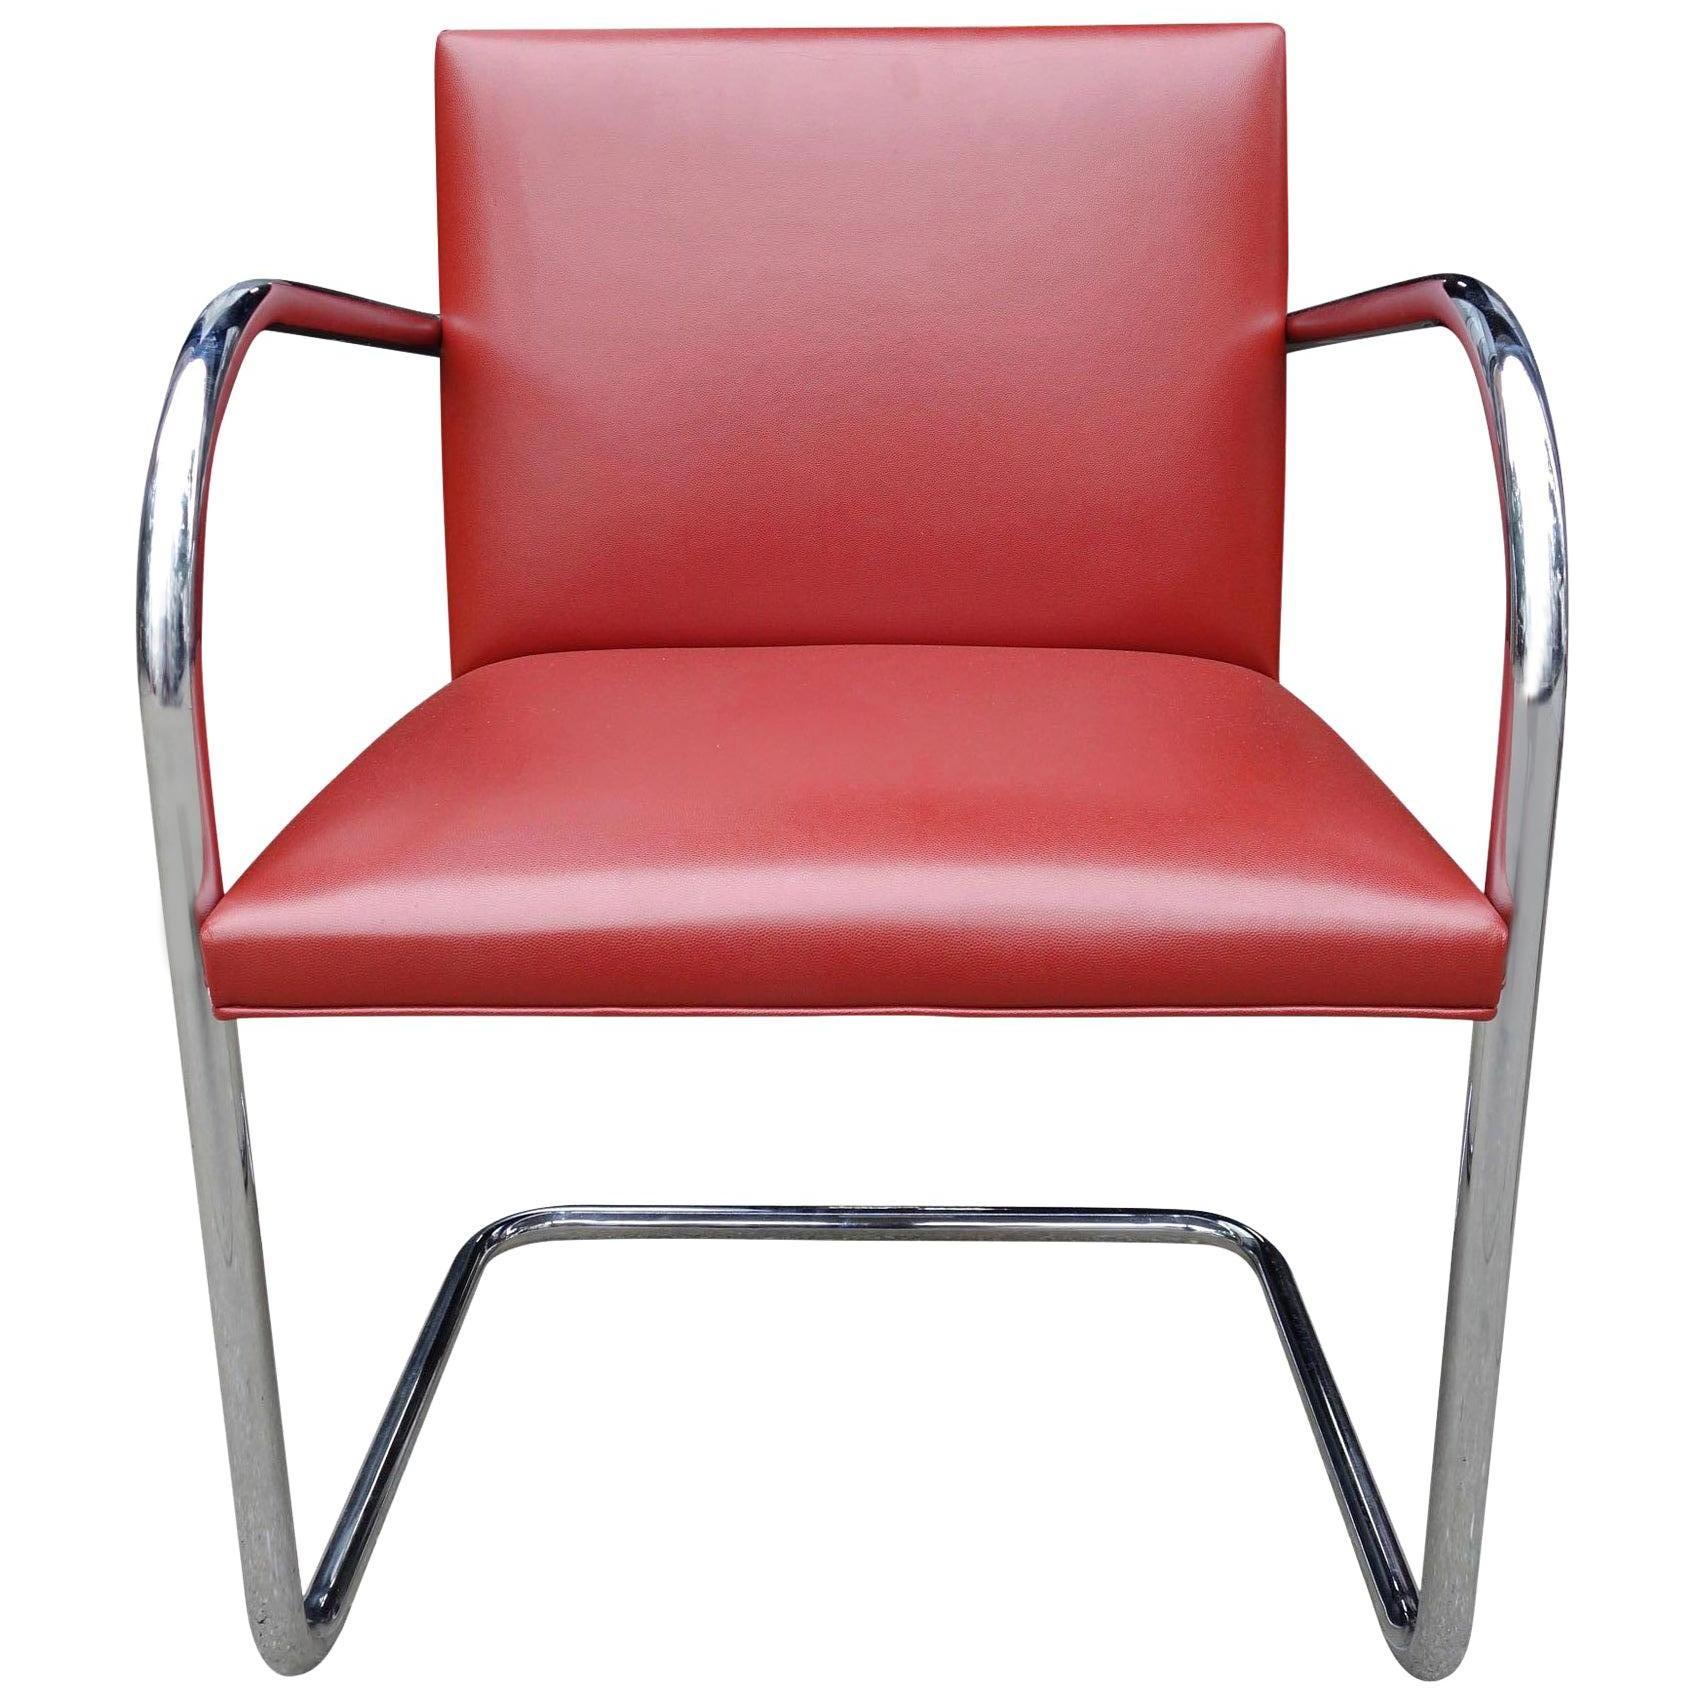 Commande spéciale de chaises en cuir rouge rembourrées par Knoll. Magnifique et très peu utilisé.